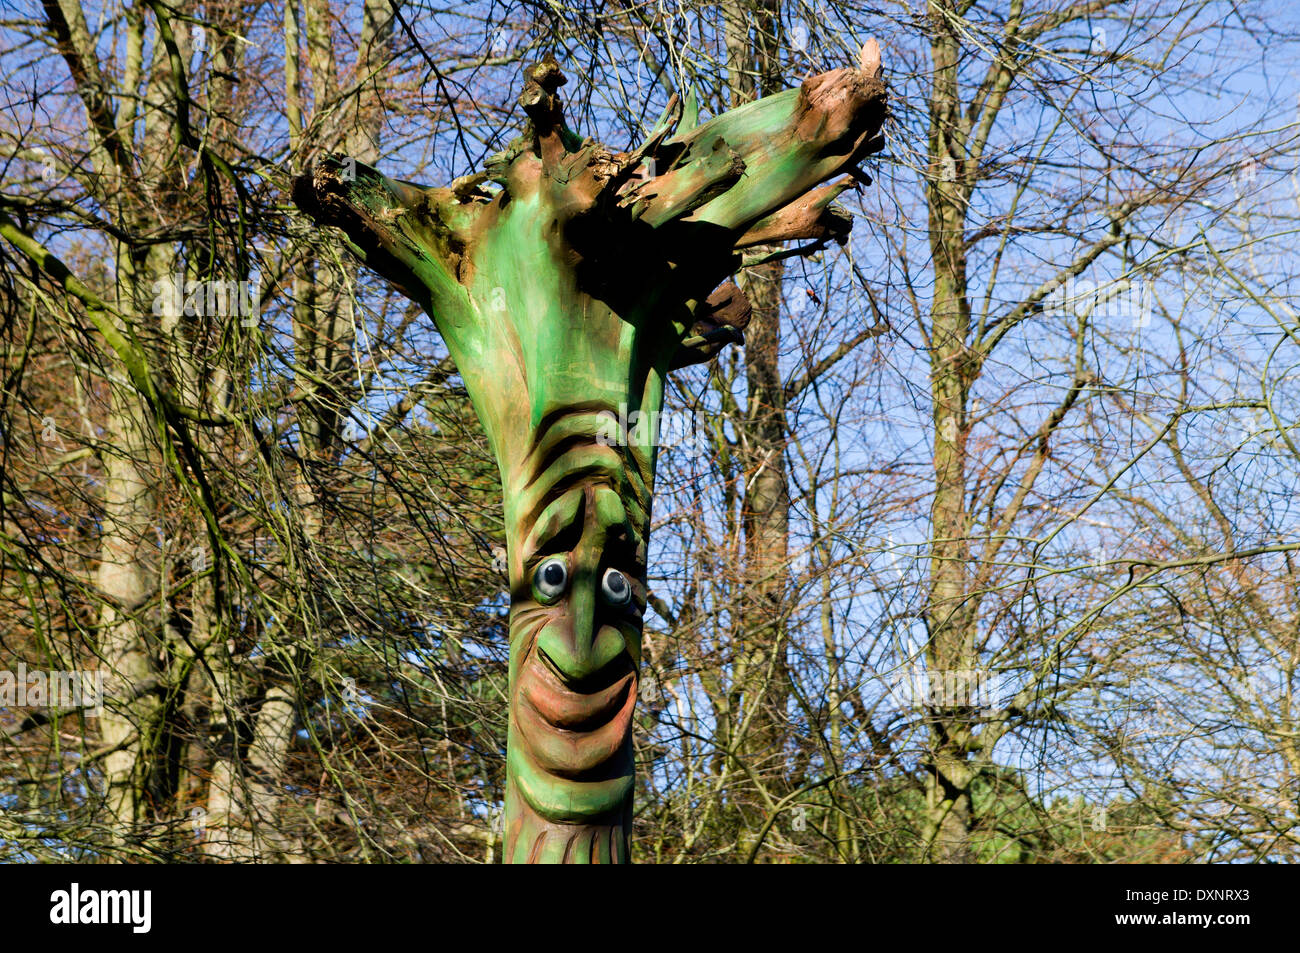 In legno scolpito arte, l'Arboretum, Bute Park, Cardiff, Galles. Foto Stock